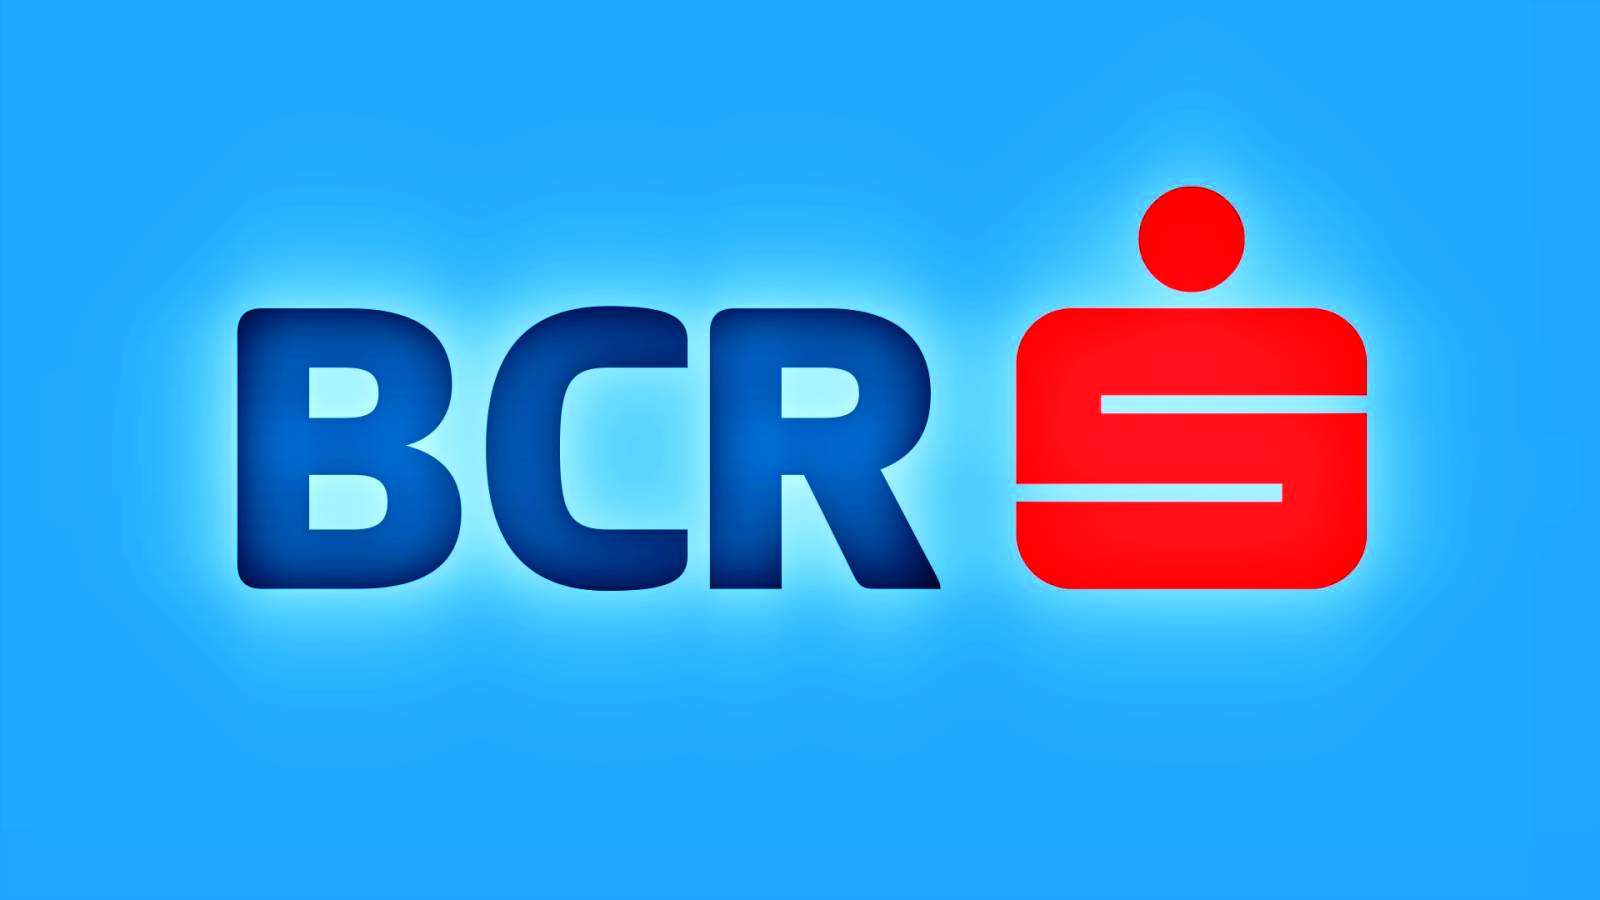 BCR Rumänien 2 WICHTIGE Nachrichten an rumänische Kunden